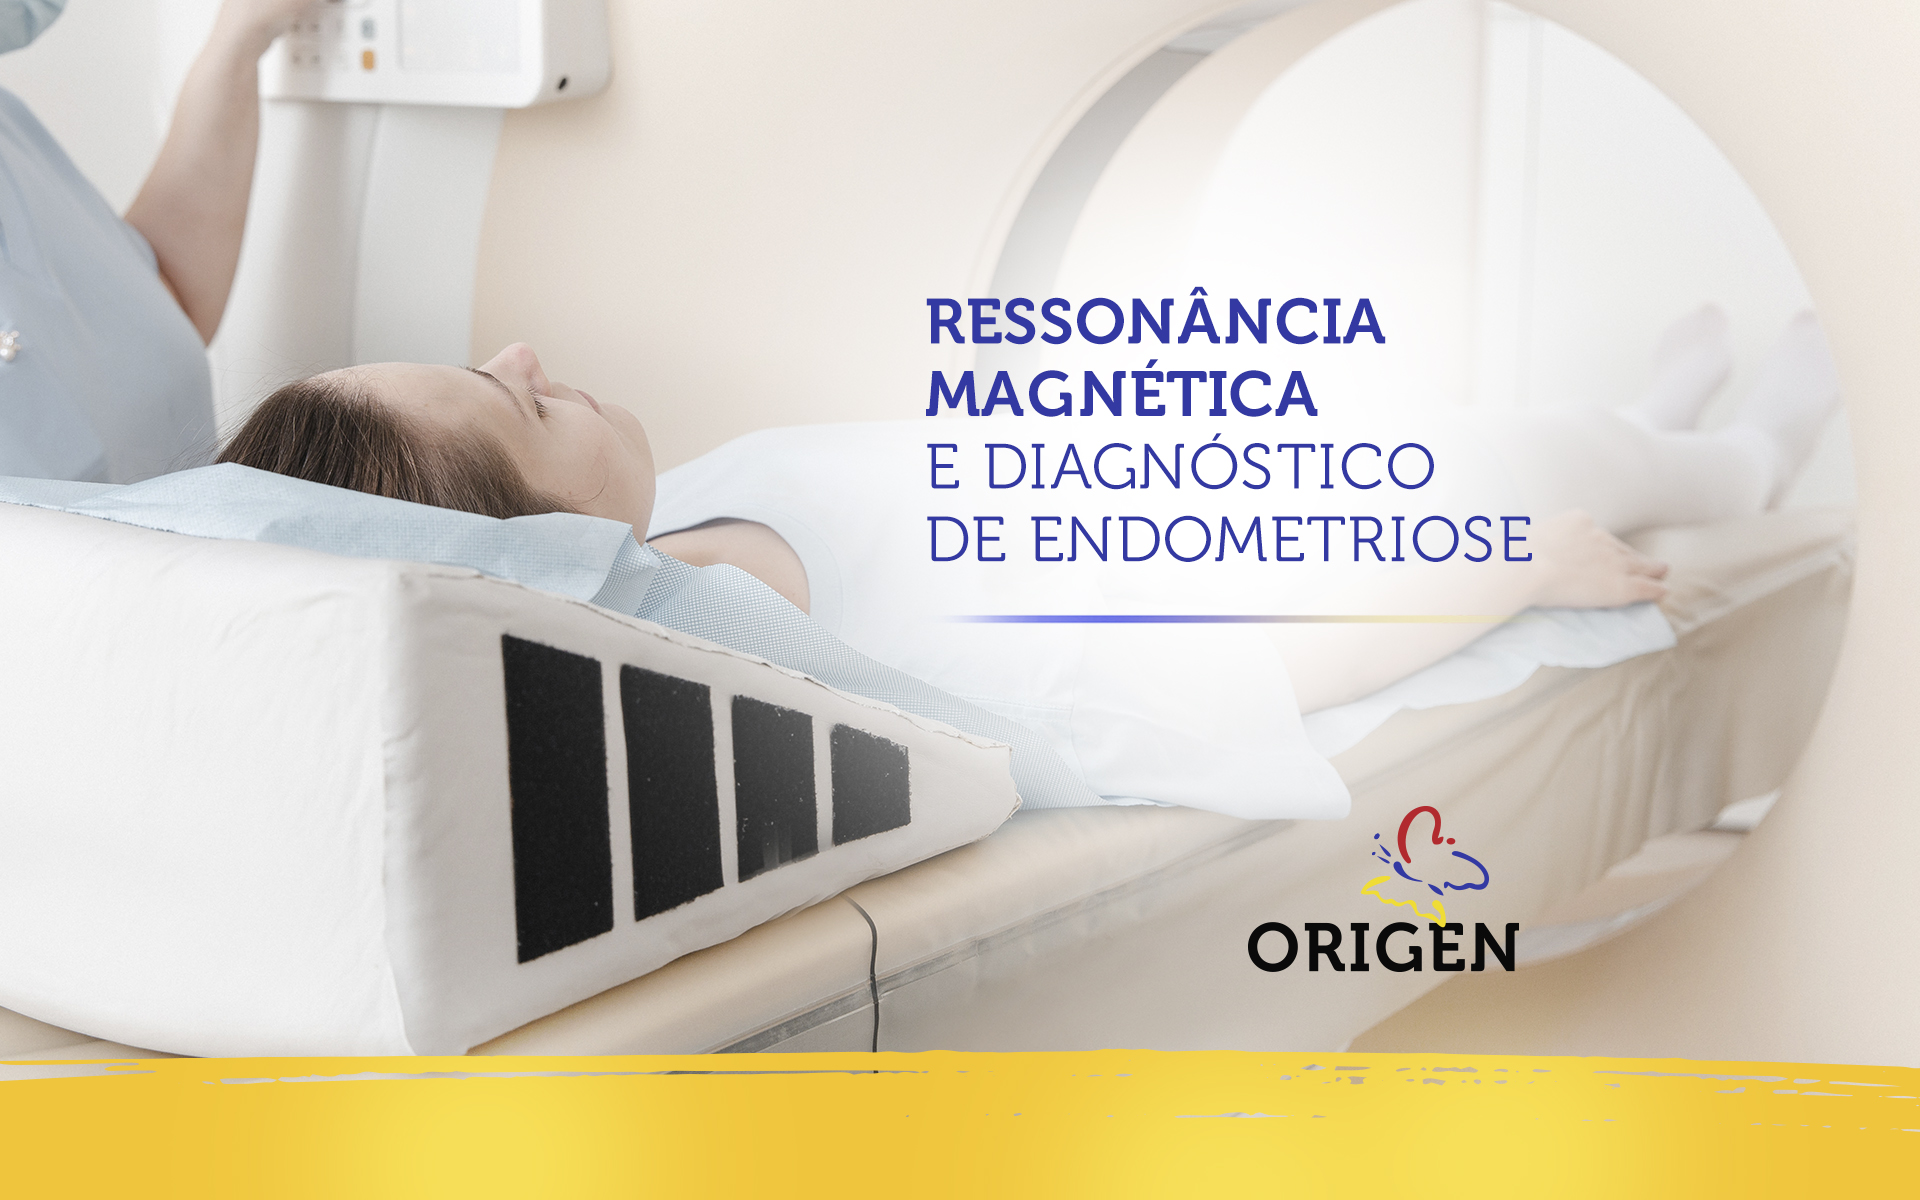 Ressonância magnética e diagnóstico de endometriose